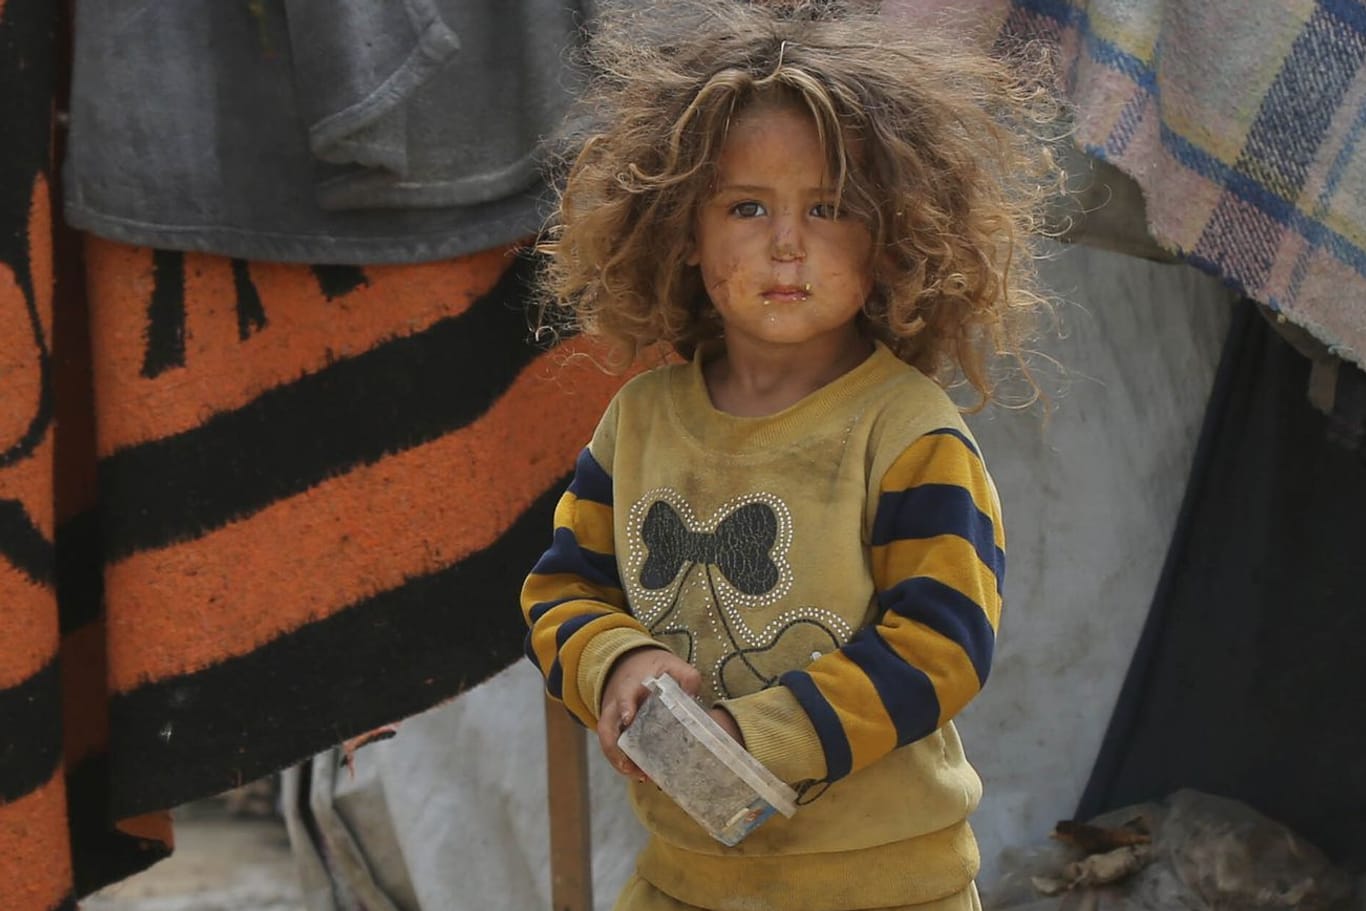 Der finale Angriff droht: geflüchtetes, palästinensisches Kind in einem Zeltlager in Rafah.